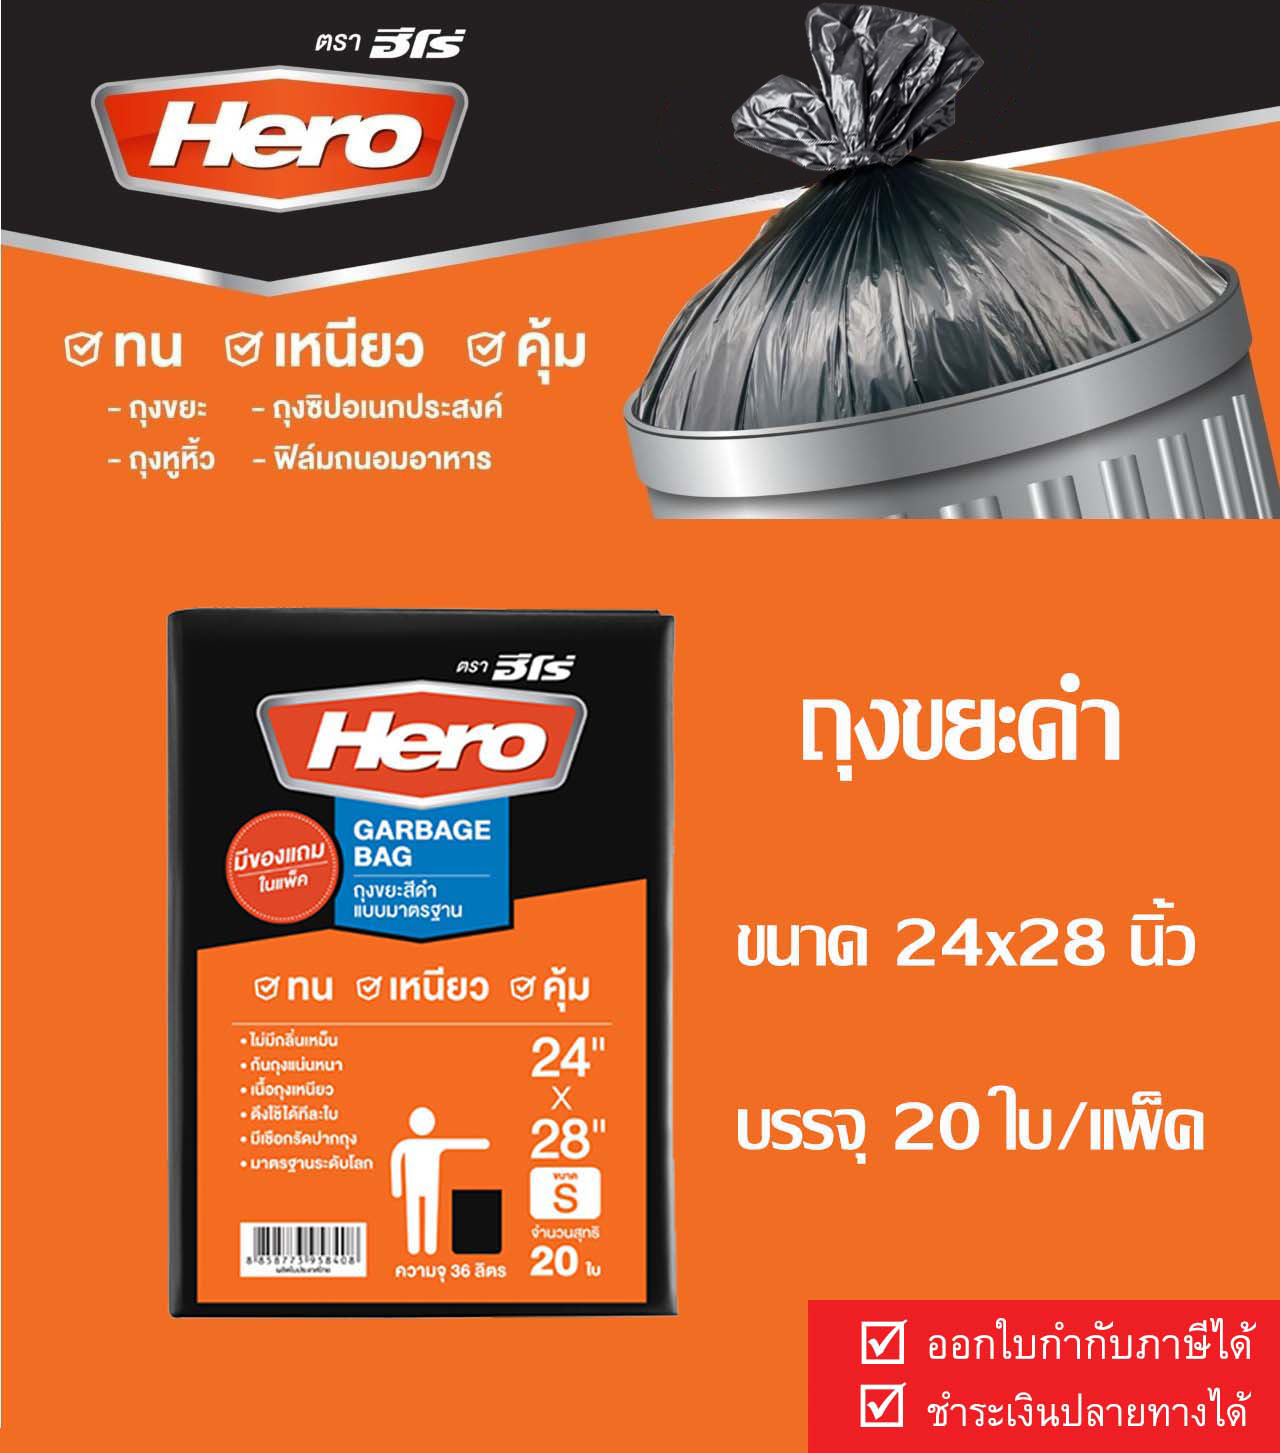 Hero ถุงขยะHero ถุงขยะ ถุงขยะดำ ถุงดำ ถุงใส่ขยะ ถุงขยะฮีโร่ Garbage bag 24x28นิ้ว